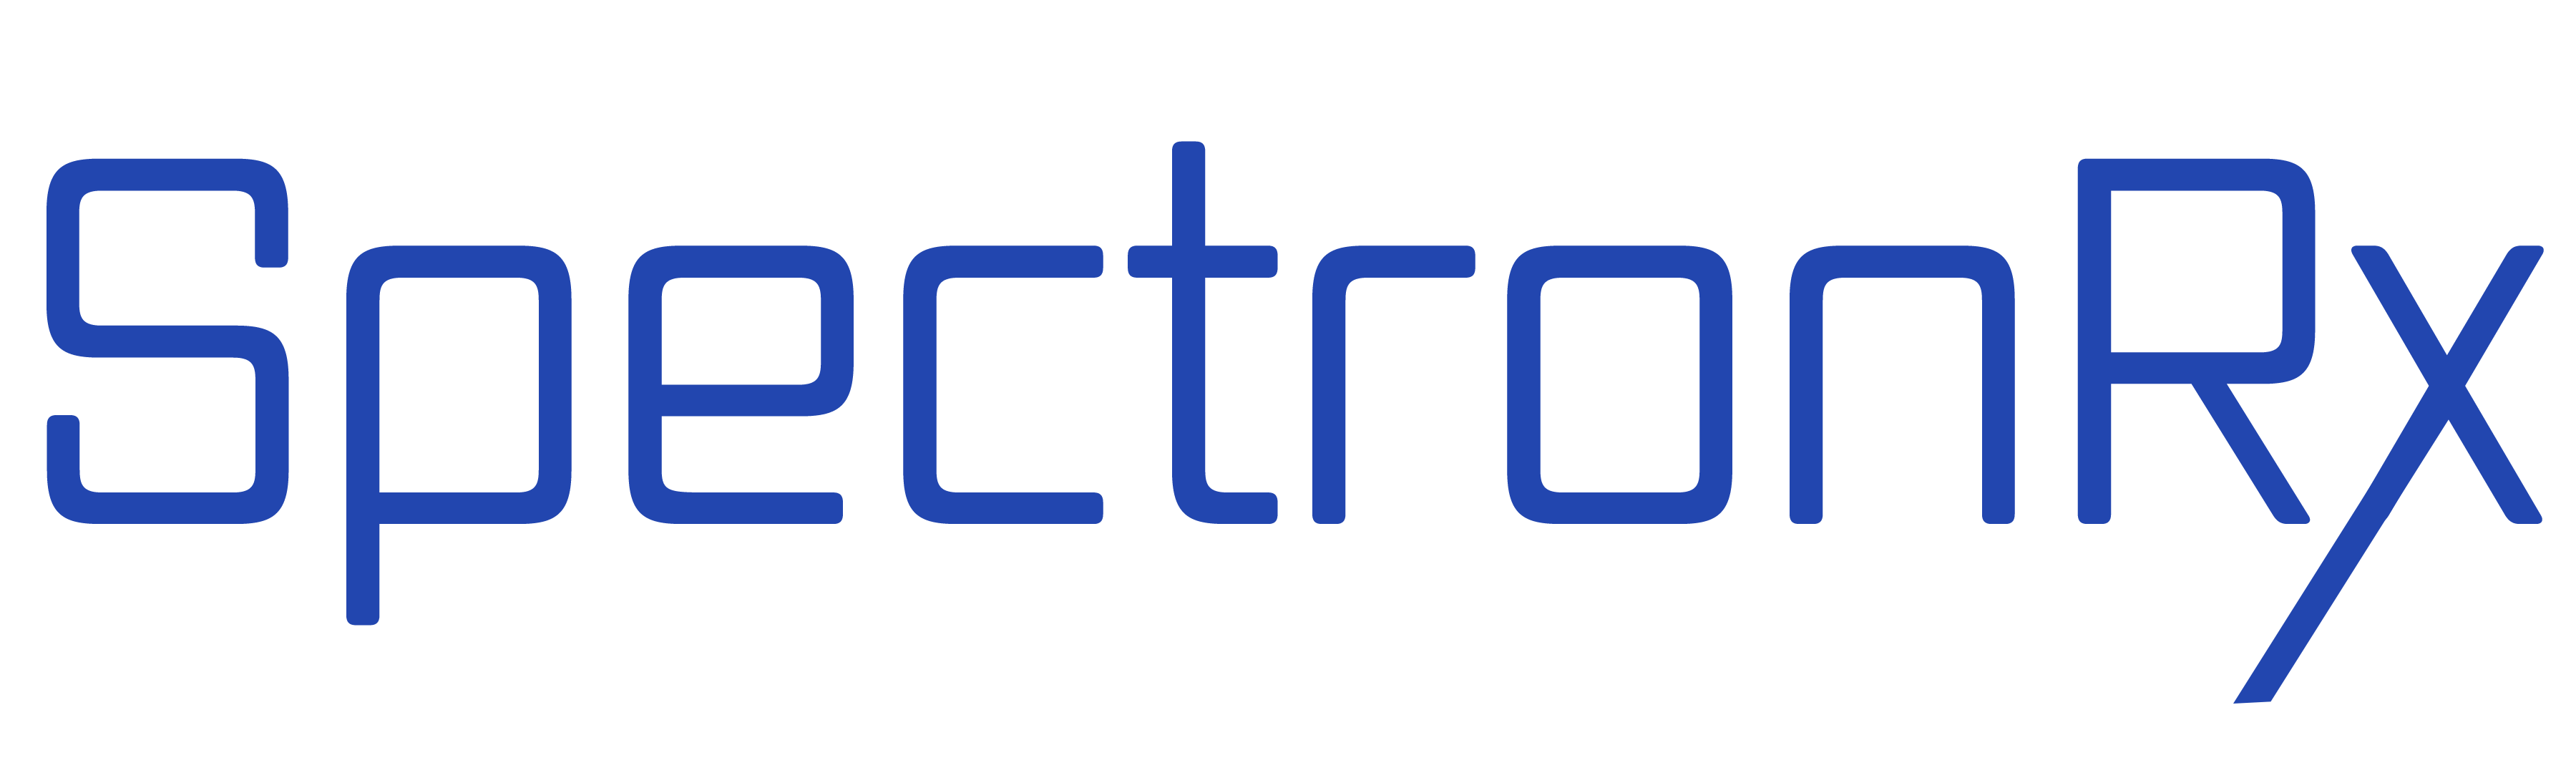 SpectronRx-logo-final-Nov-2021-v3